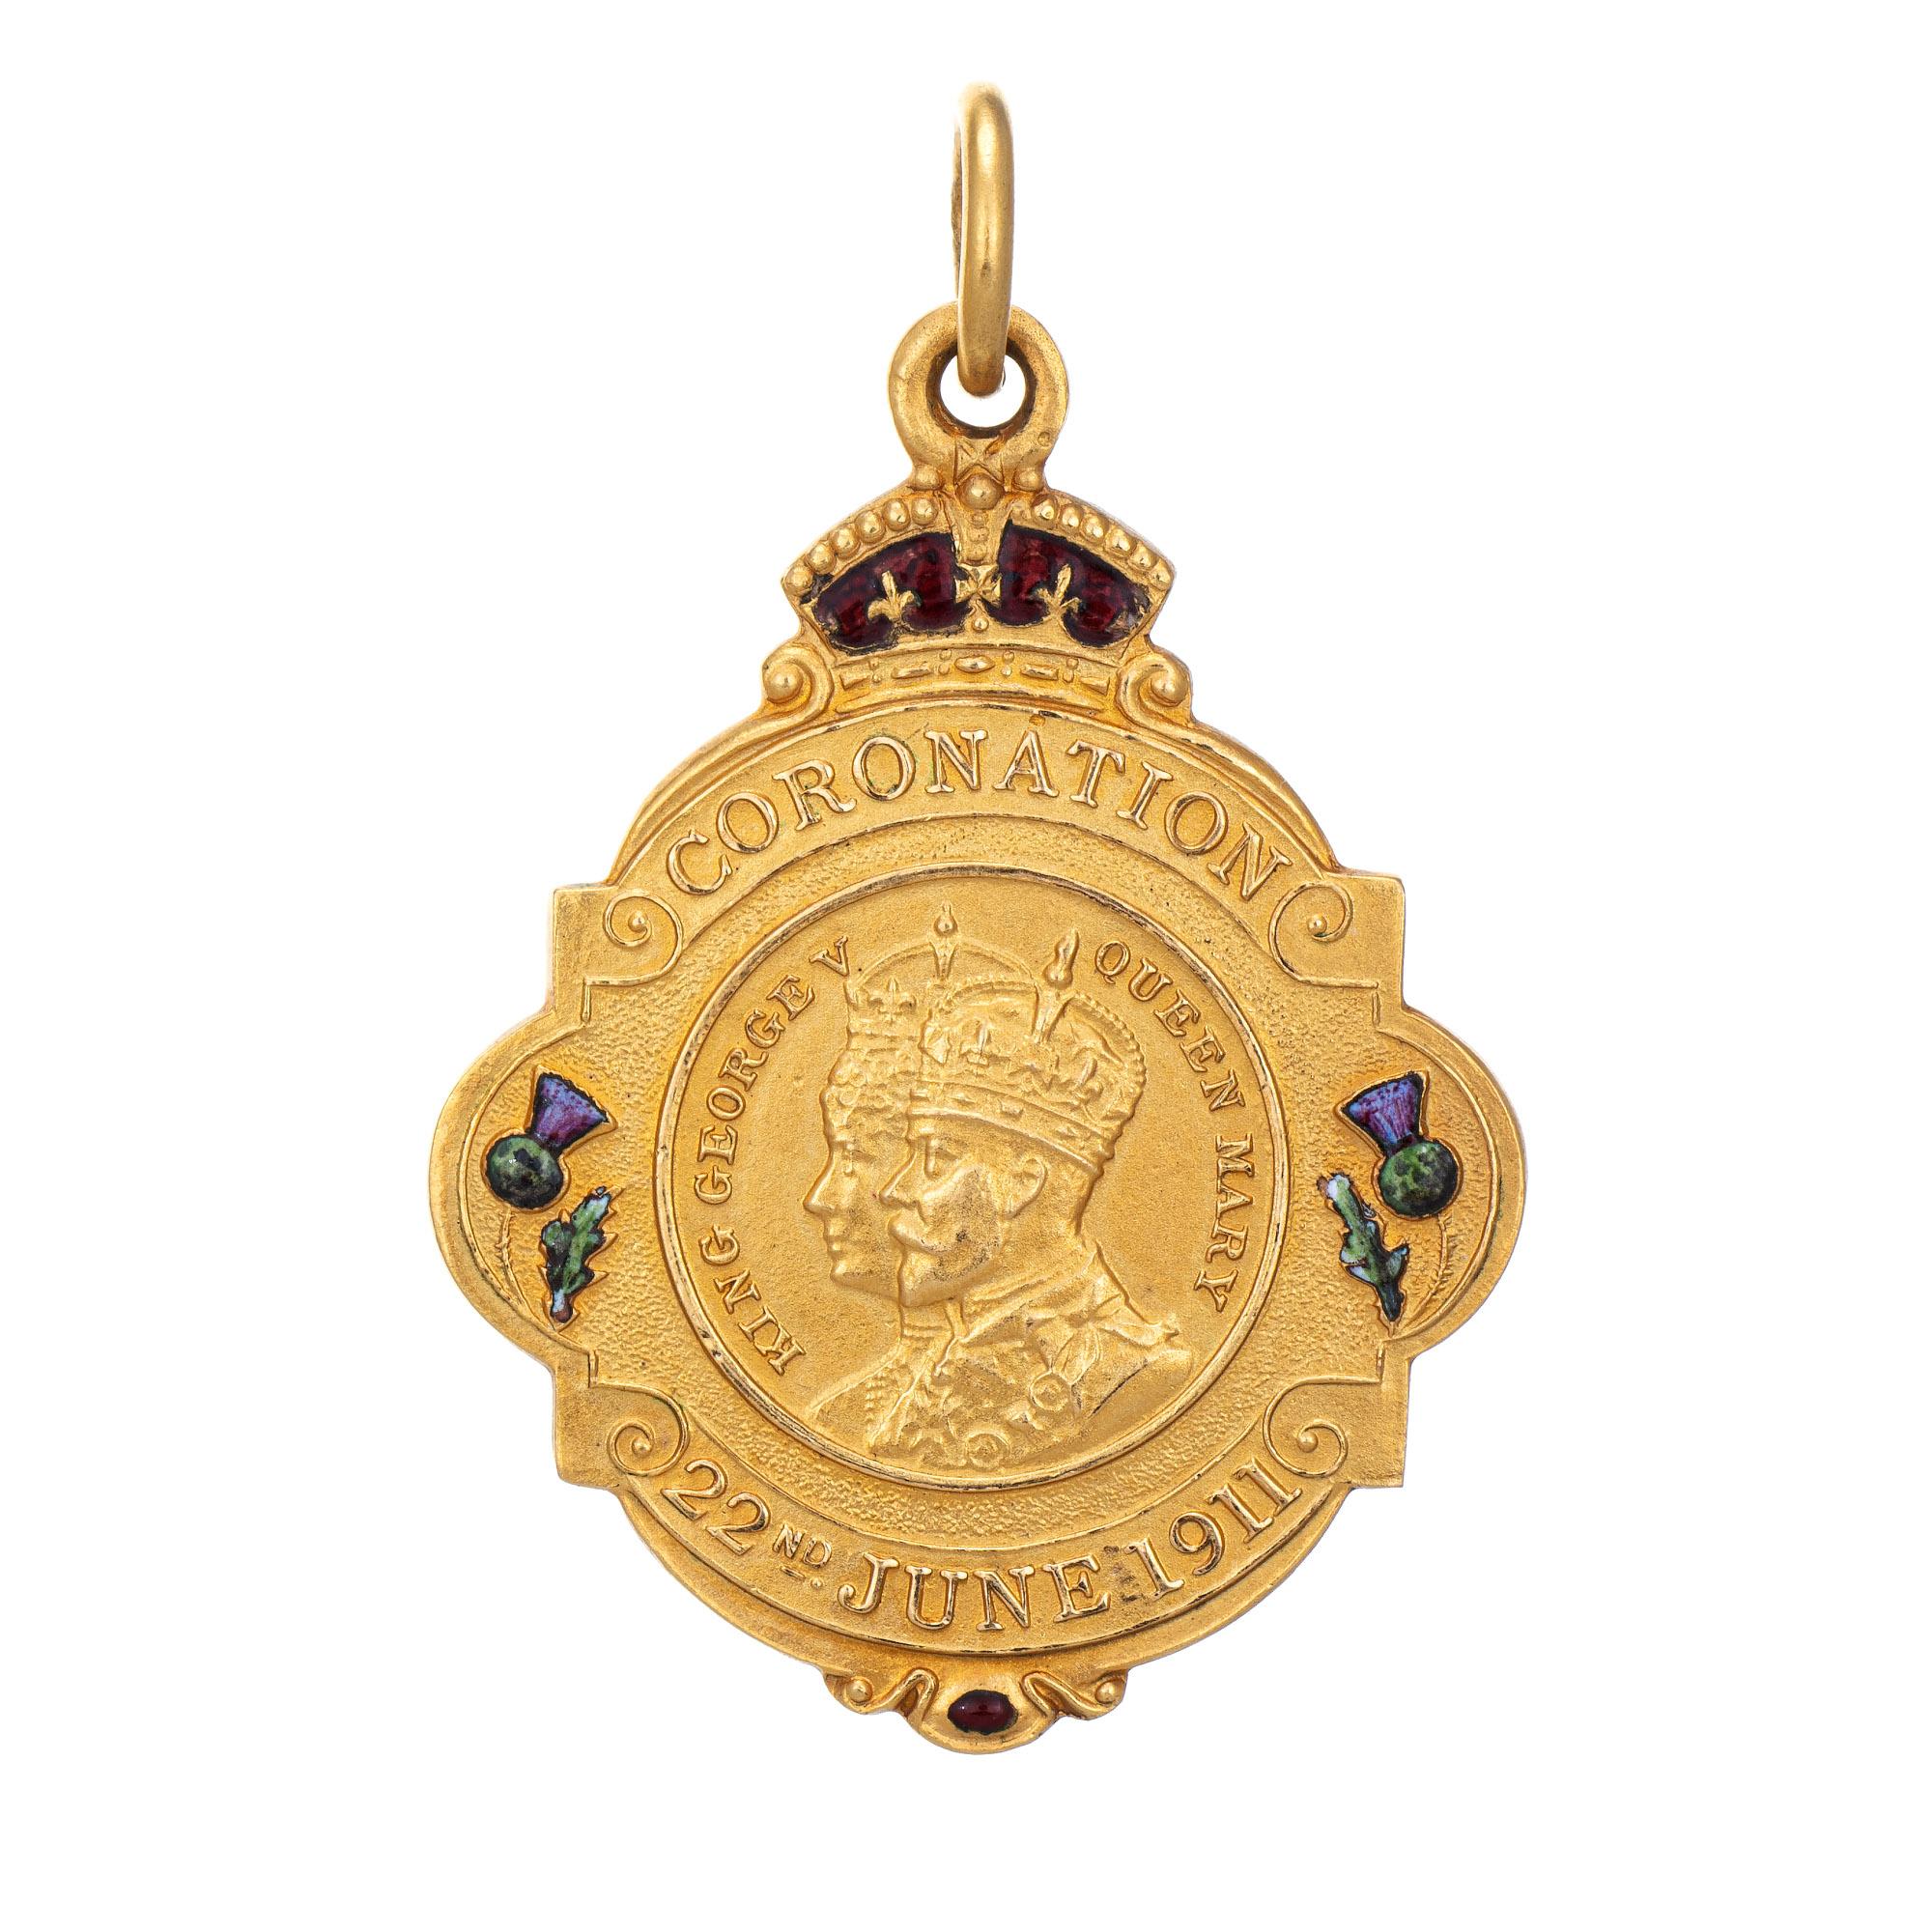 Médaillon antique élaboré de l'époque édouardienne (vers 1911) en or jaune 15 carats. 

Le médaillon magnifiquement détaillé date de 1911 et commémore le couronnement du roi George V et de la reine Mary le 22 juin. Les détails colorés et élaborés de